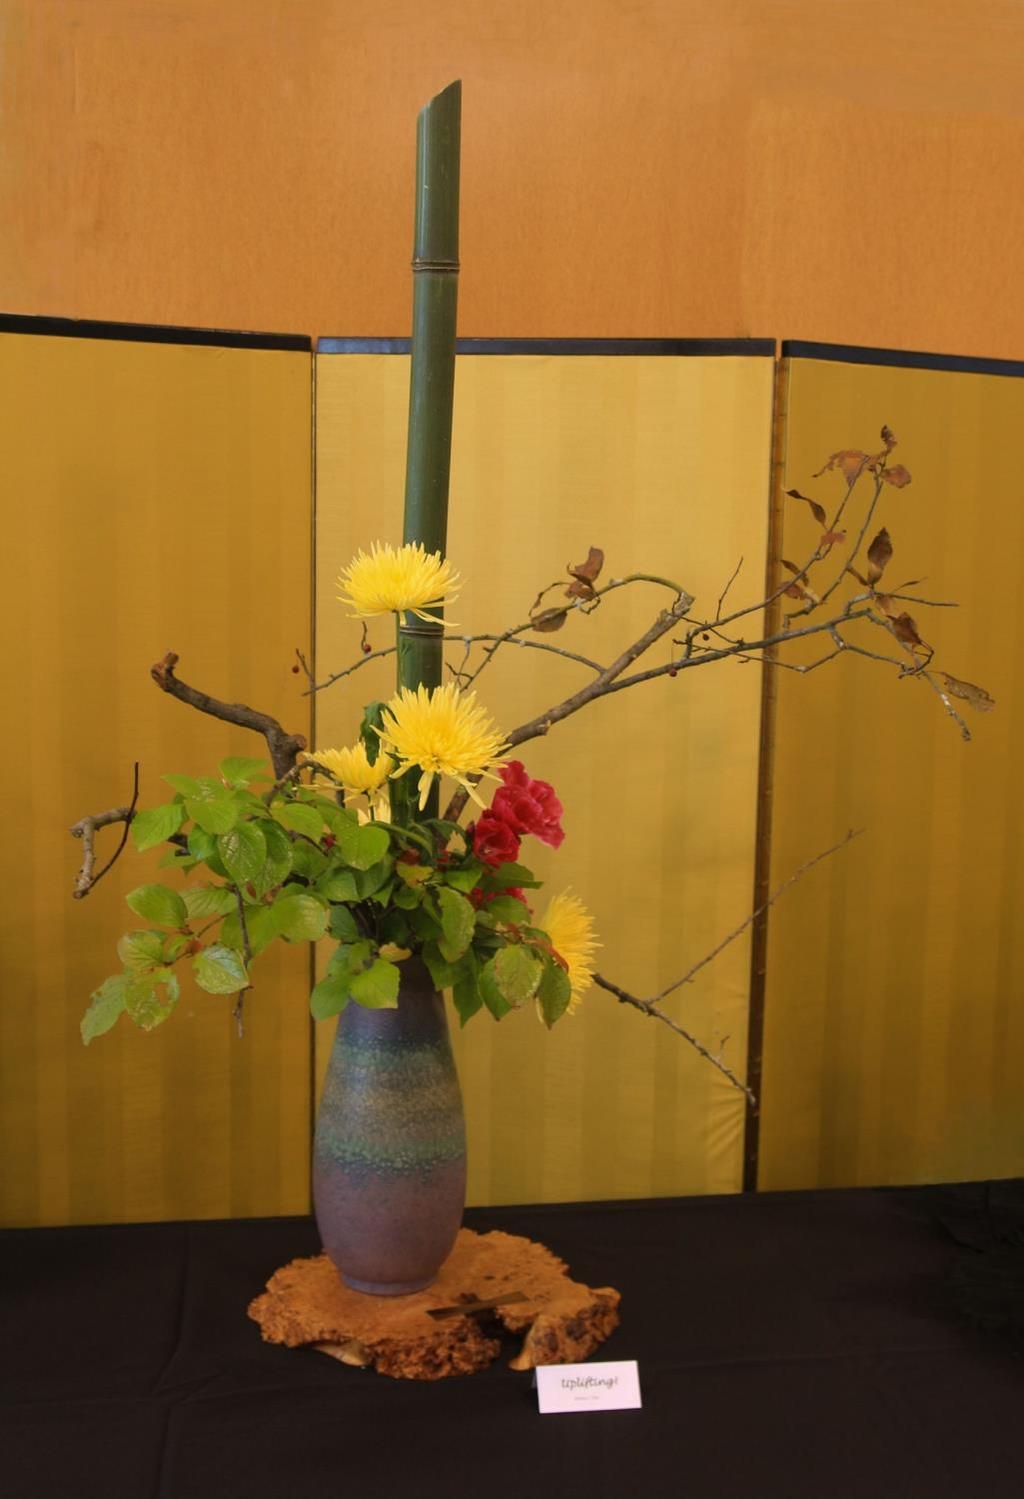 Uplifting By Doris Liu Materials: Bamboo, crabapple branches, Japanese stewartia branches,